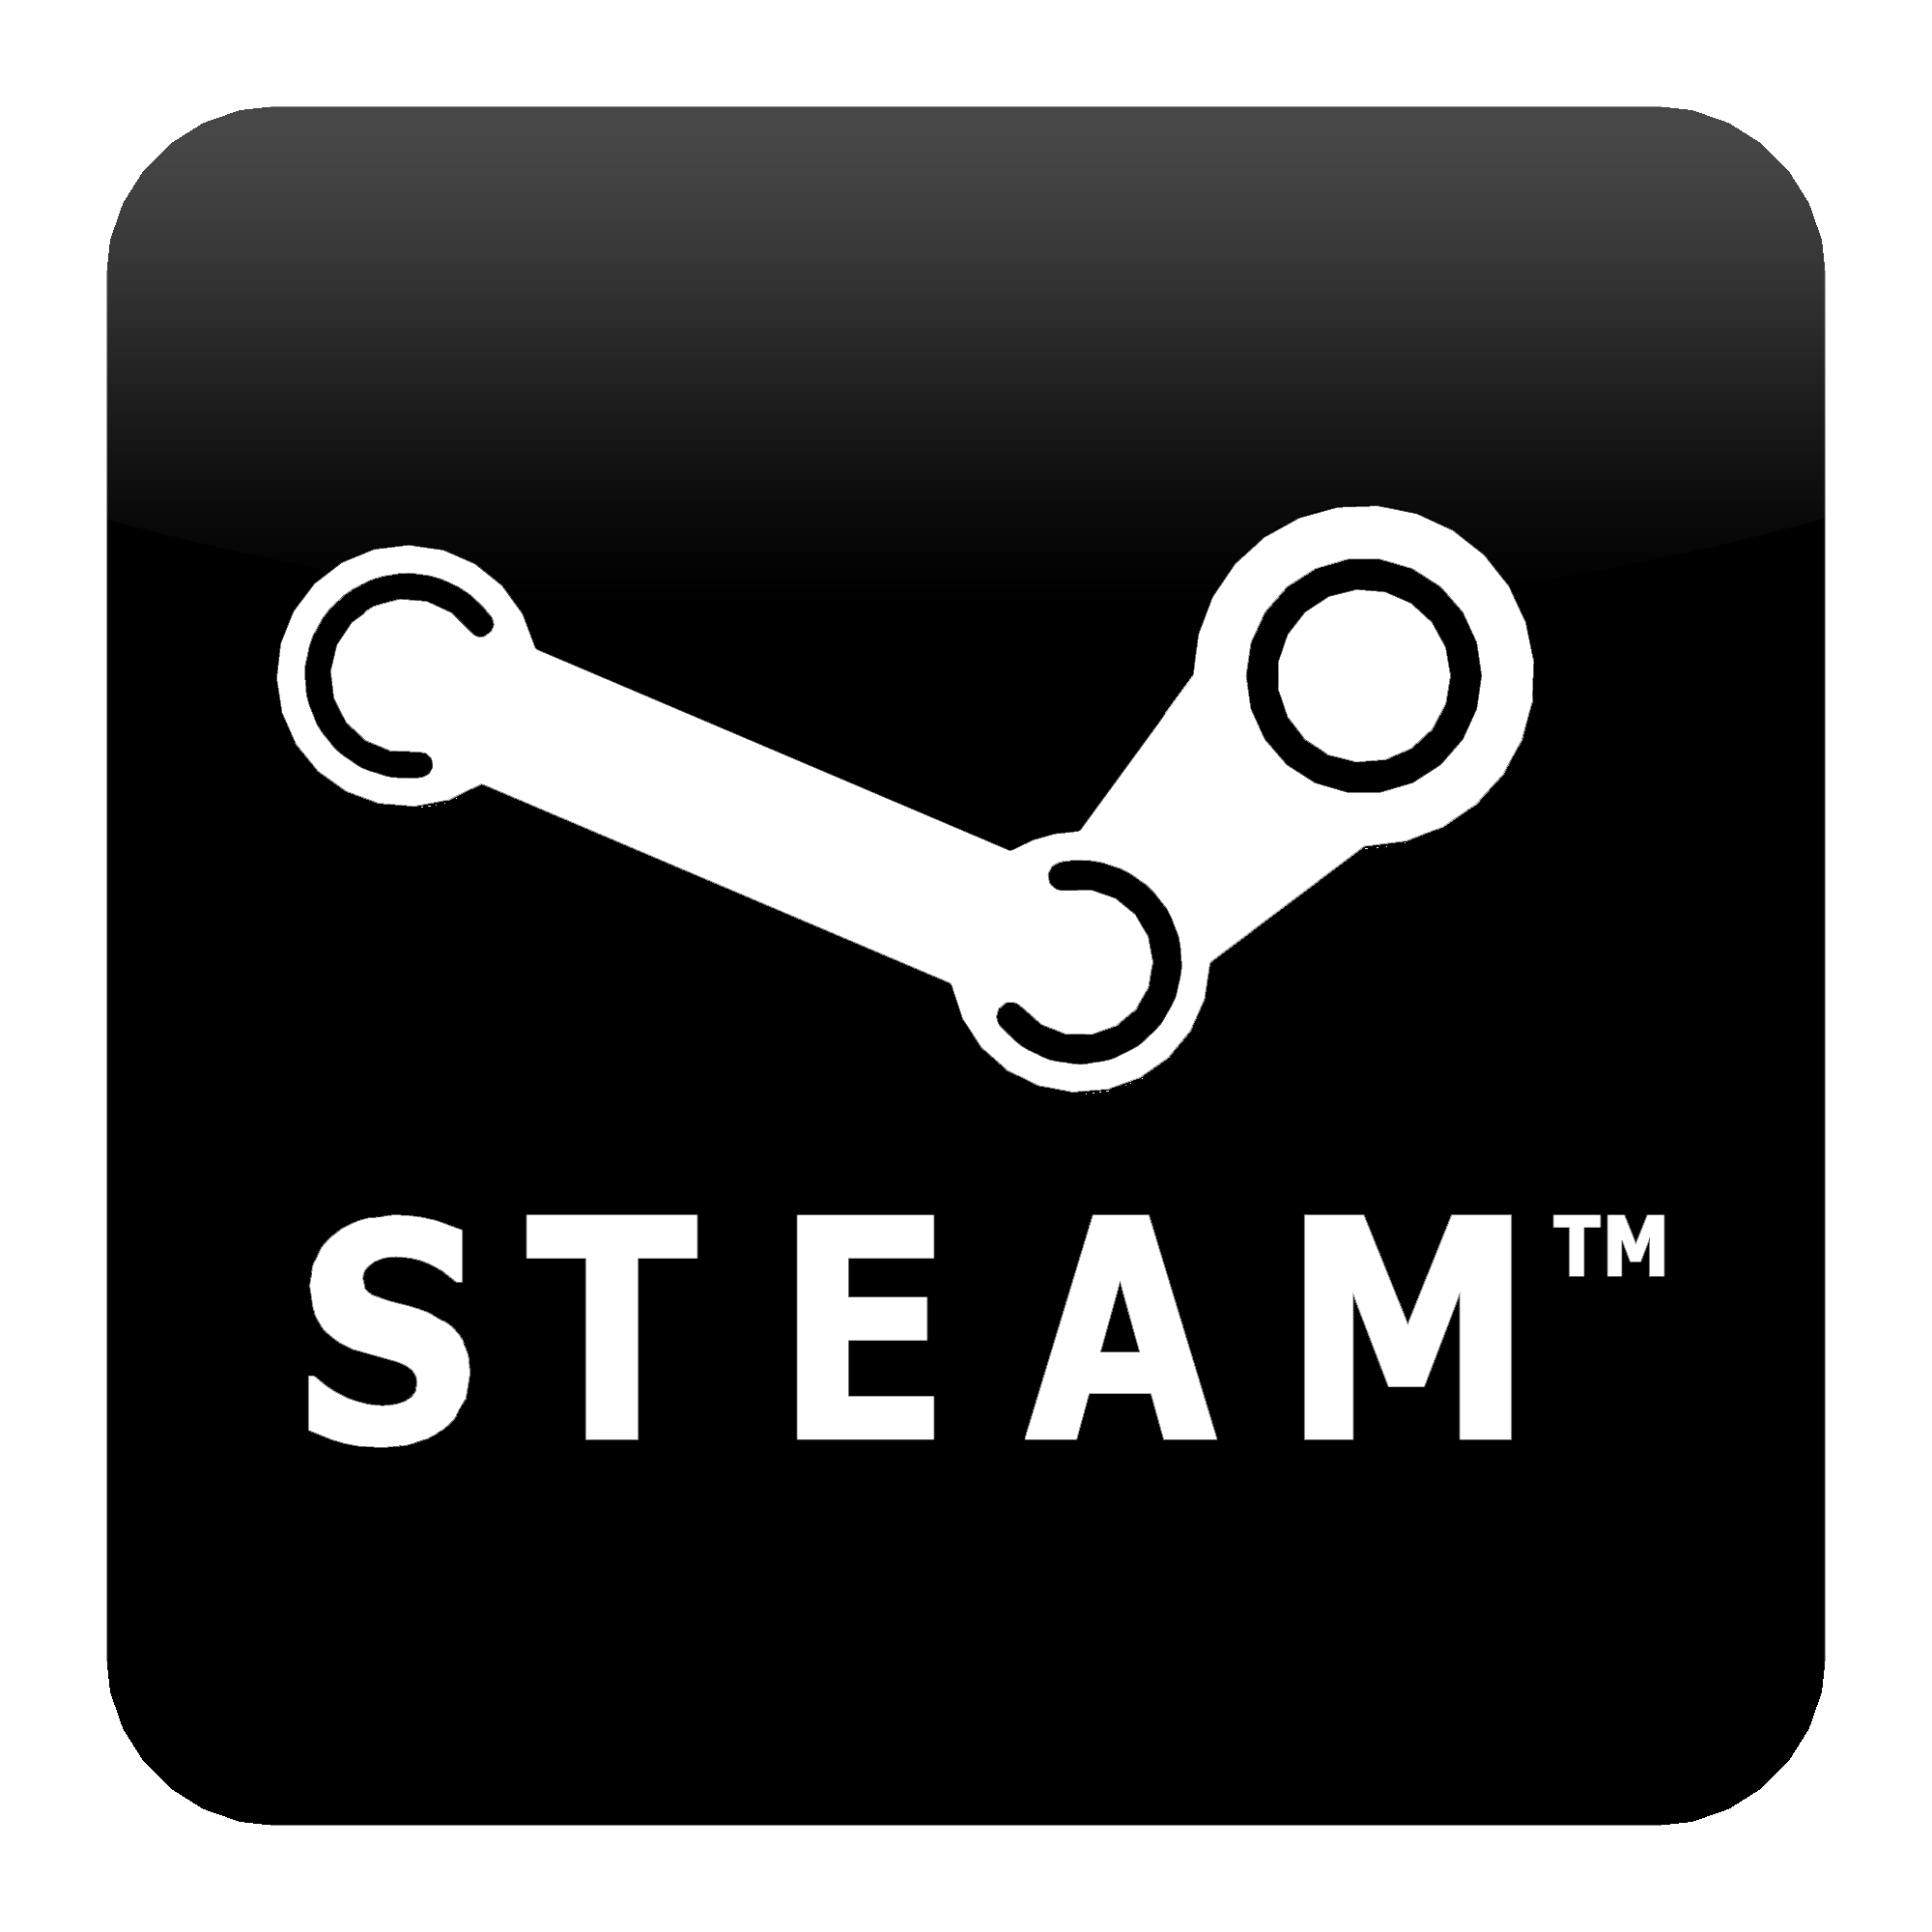 Как вернуть Steam-аккаунт. Или как общаться с суппортом стима?